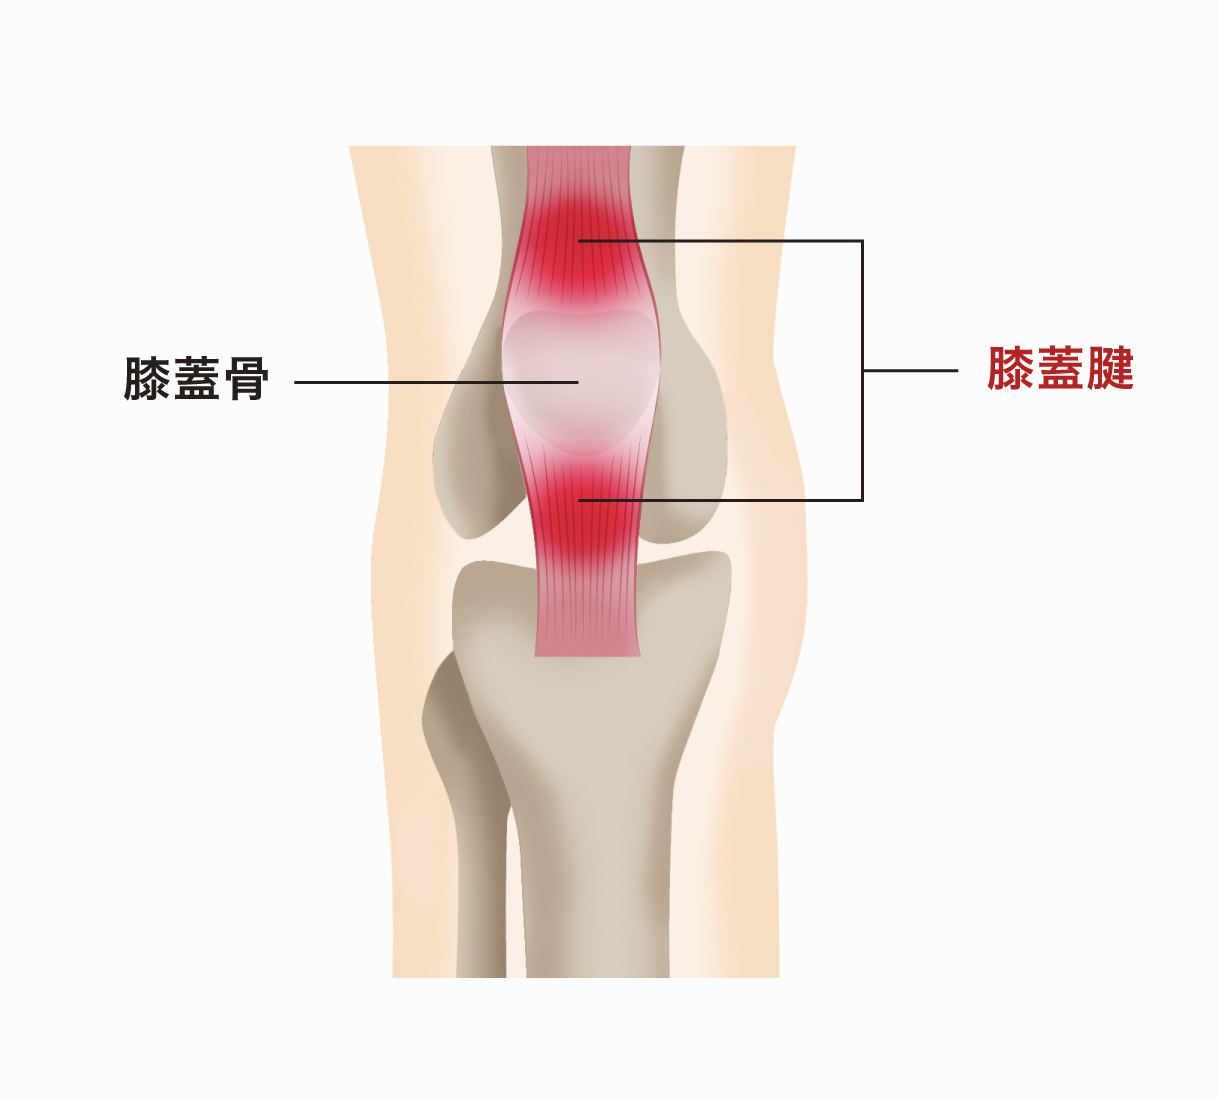 膝蓋腱炎 ジャンパー膝 とは 膝蓋腱炎の症状や診断 治療方法について医師が解説 関節治療オンライン